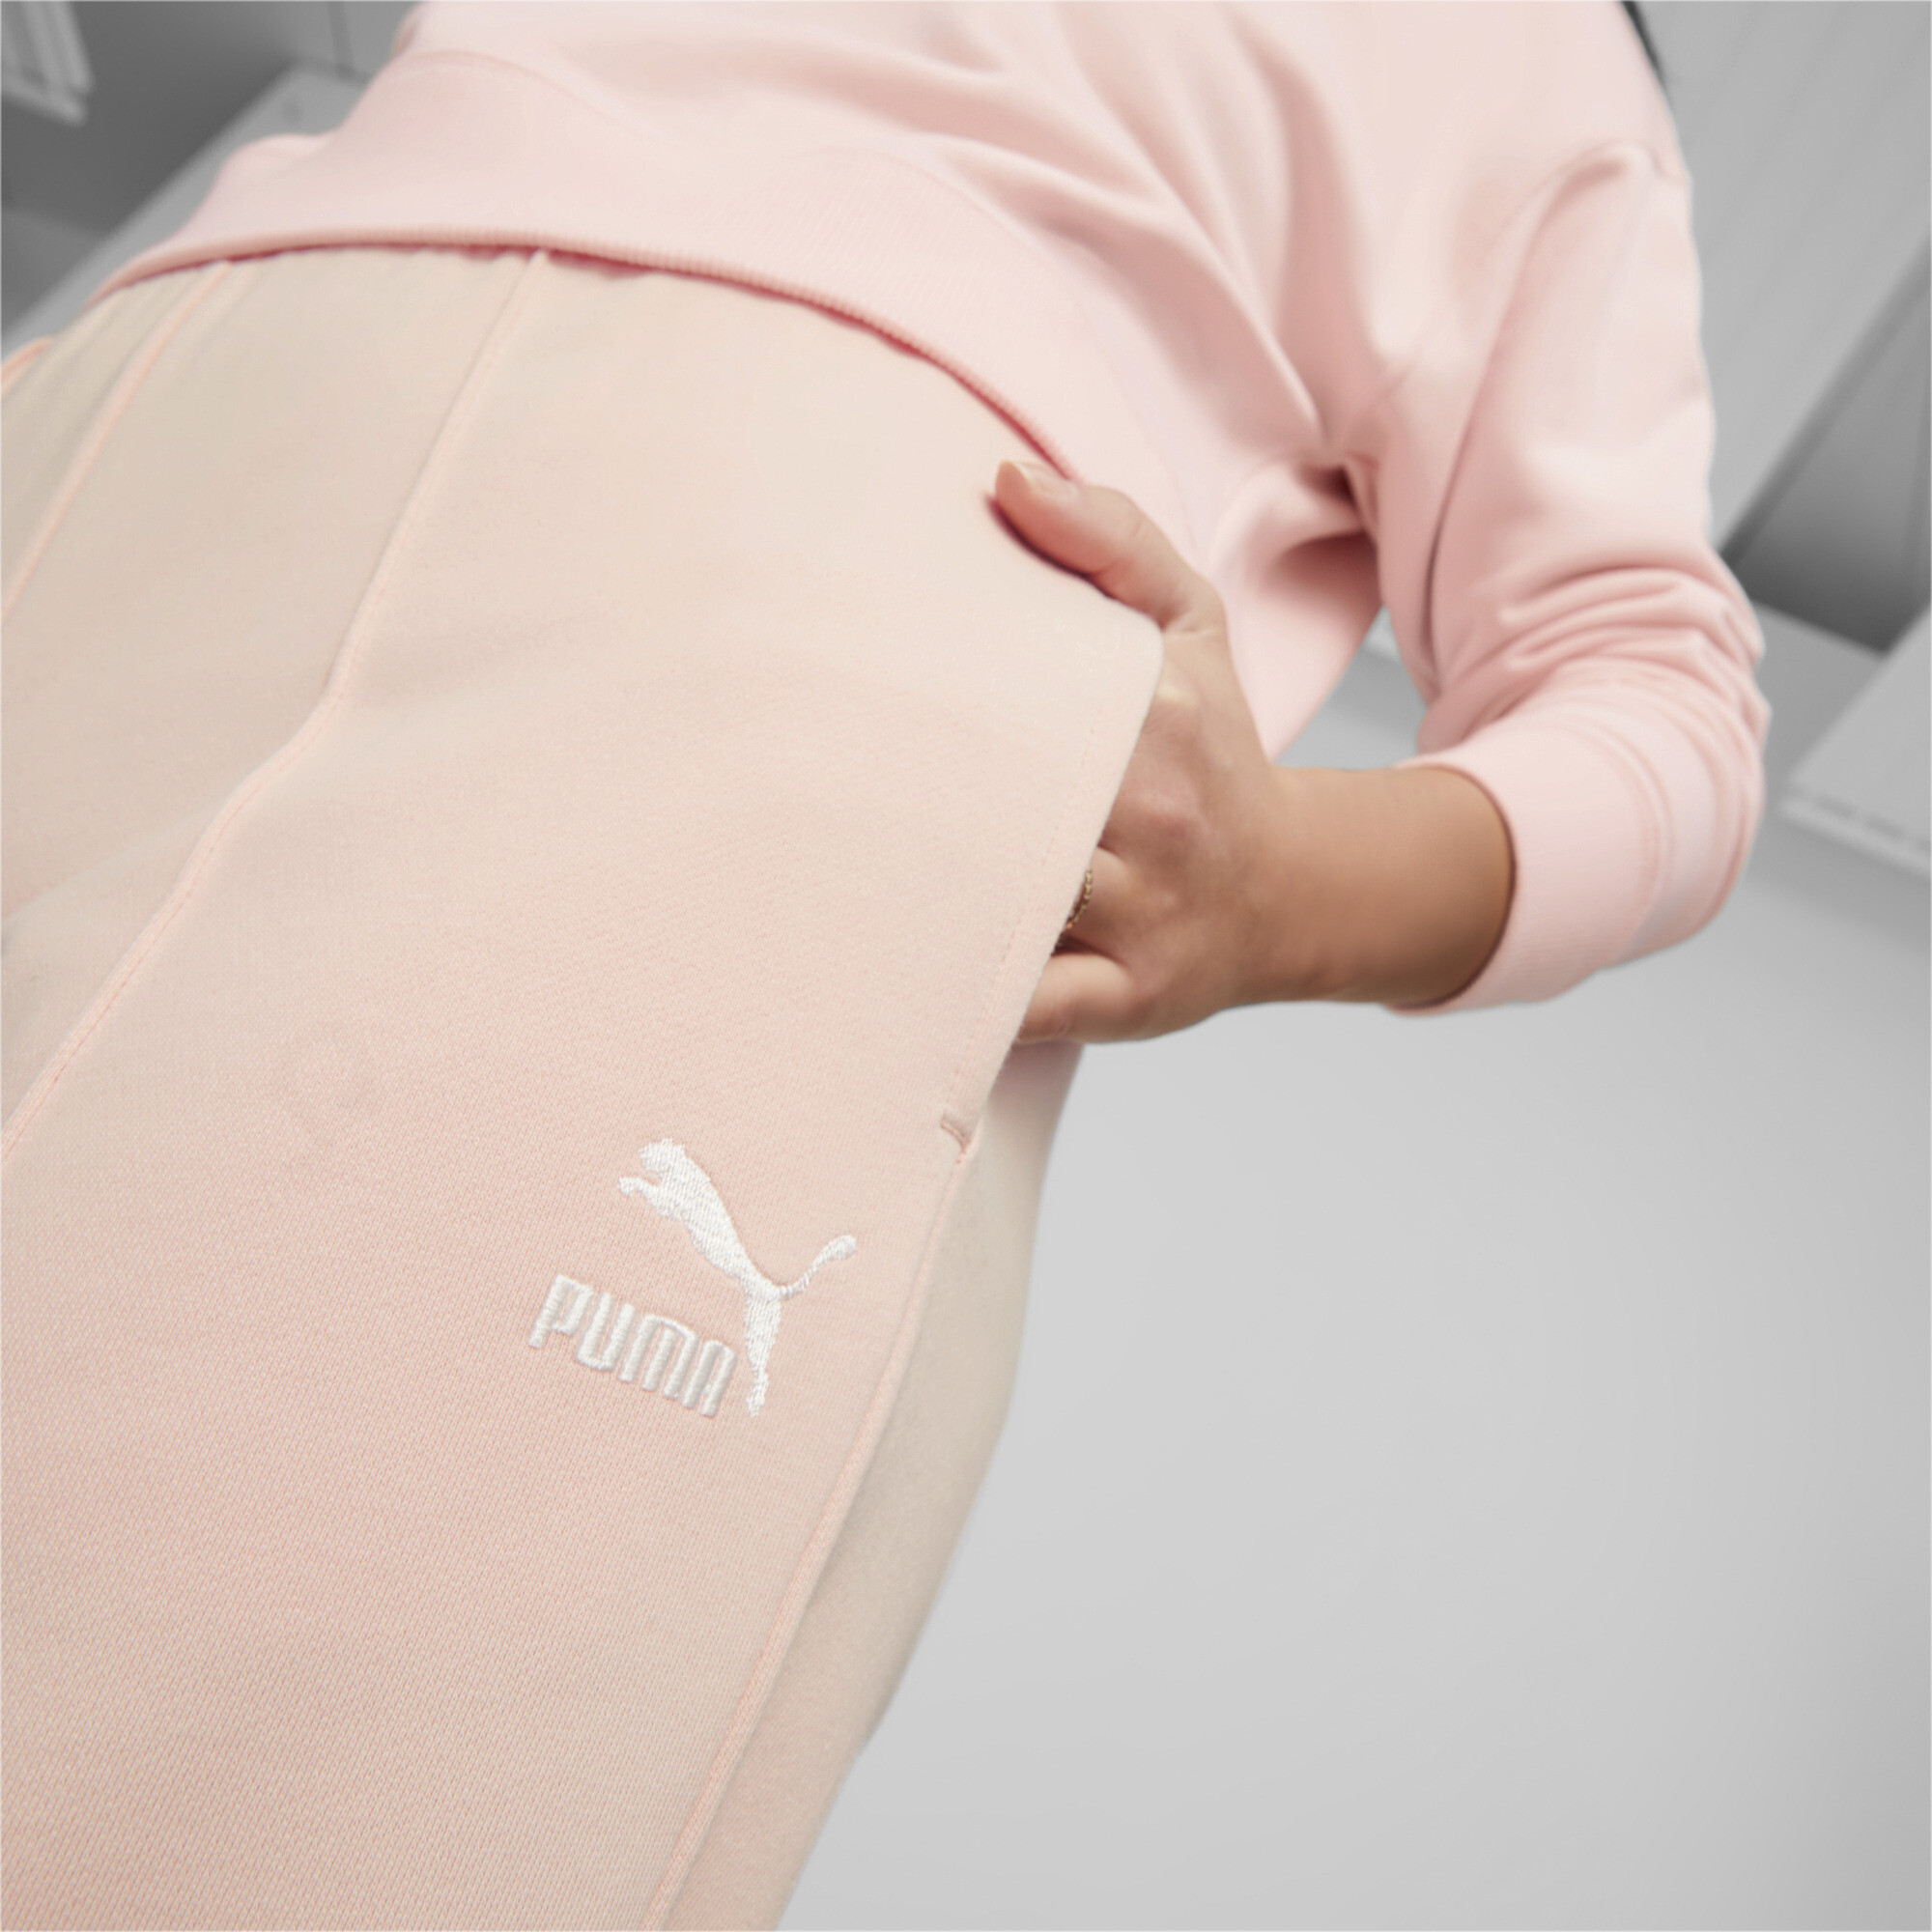 Women's Puma Classics Sweatpants, Pink, Size M, Clothing